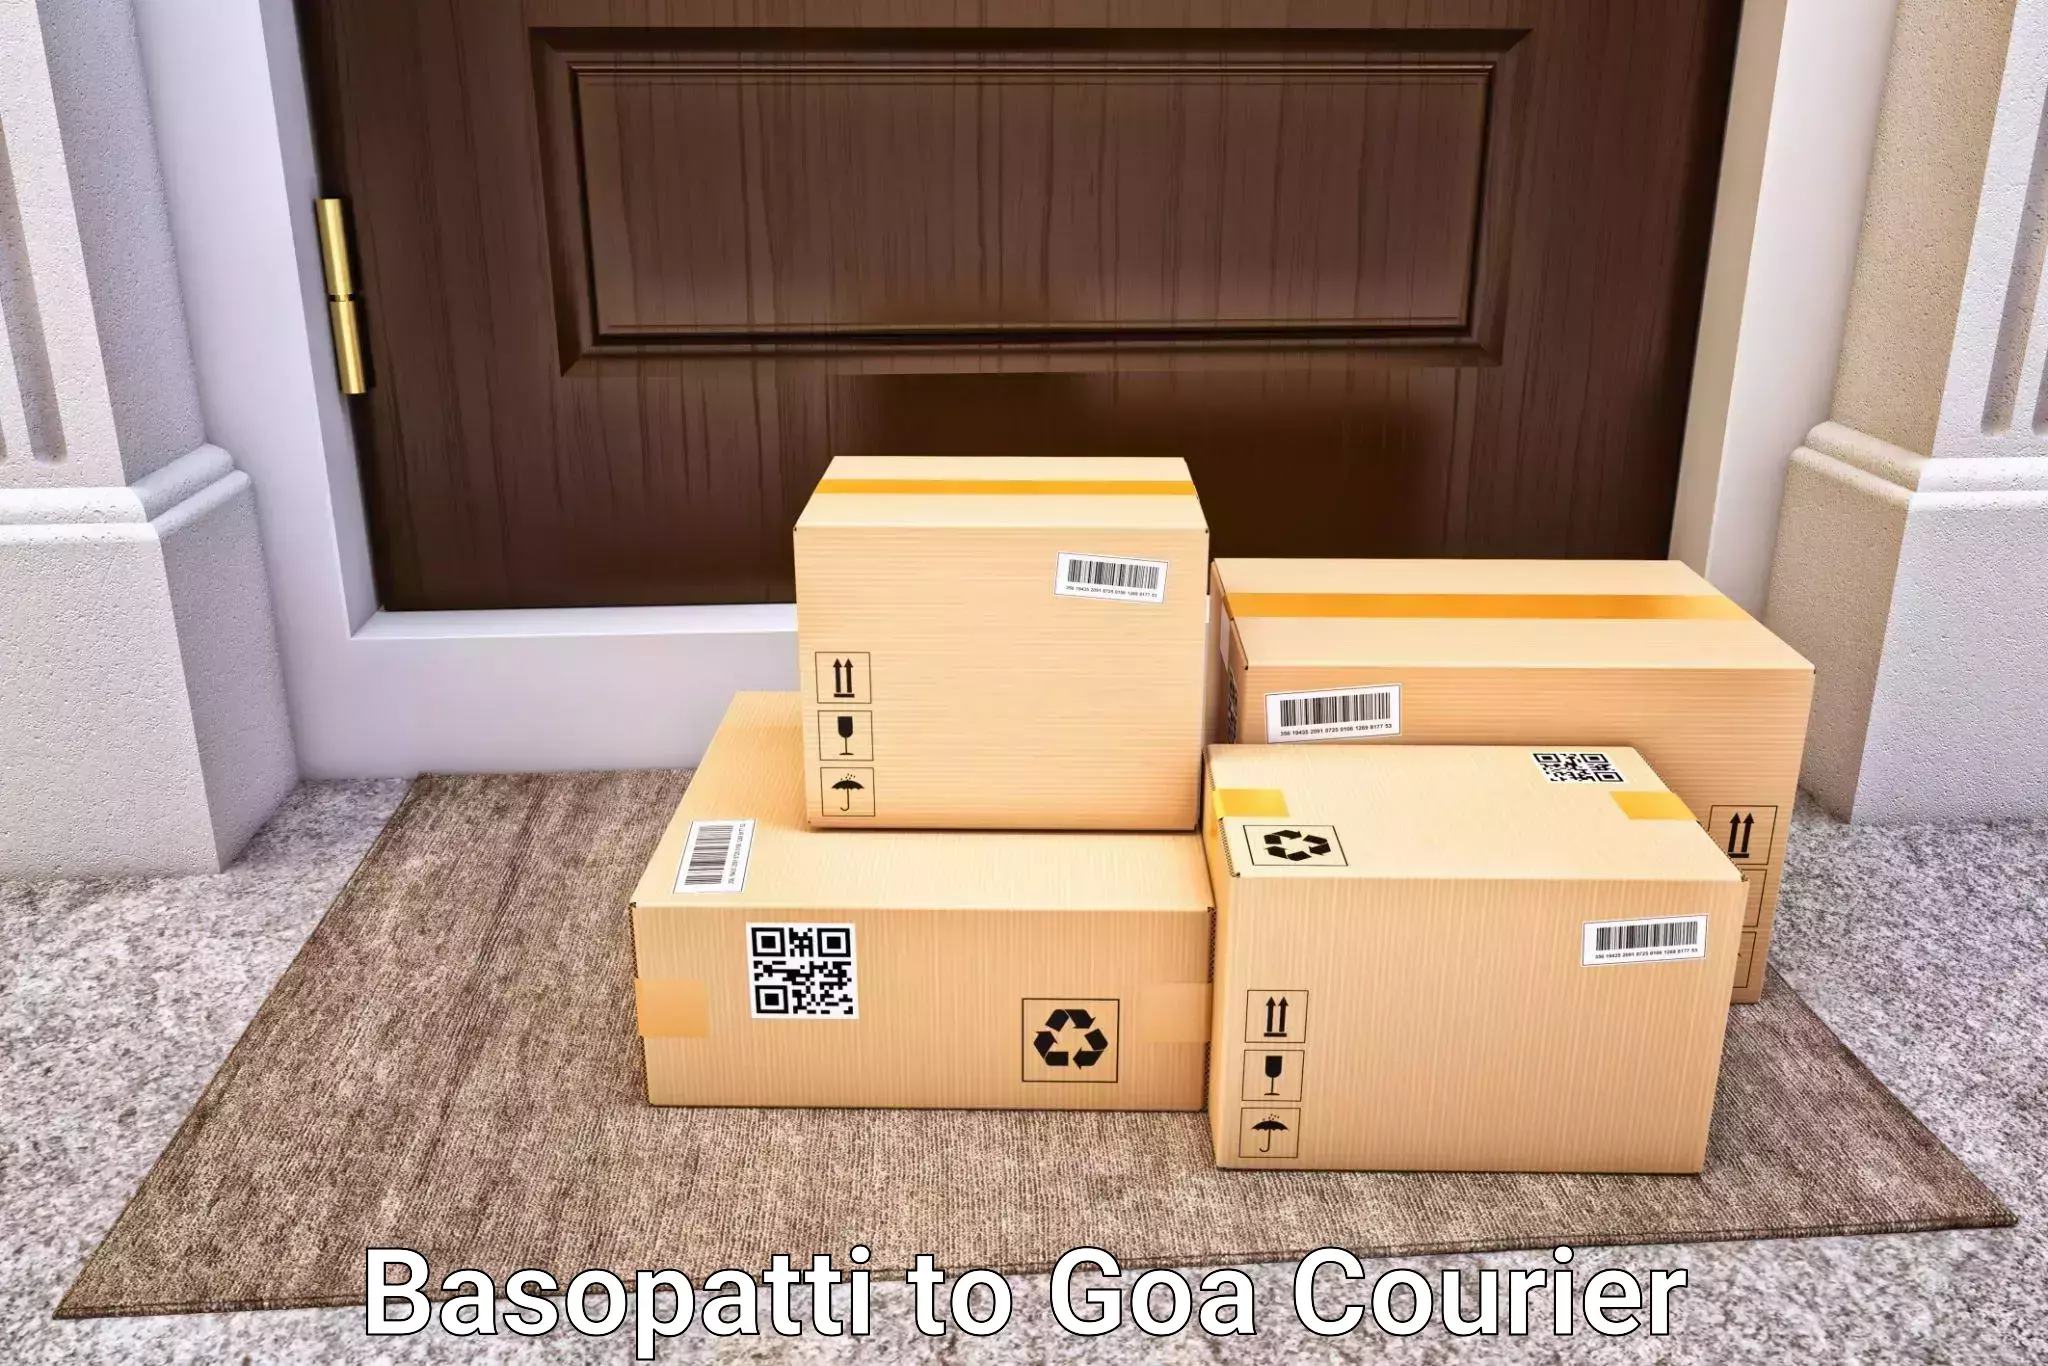 Luggage delivery estimate Basopatti to Vasco da Gama